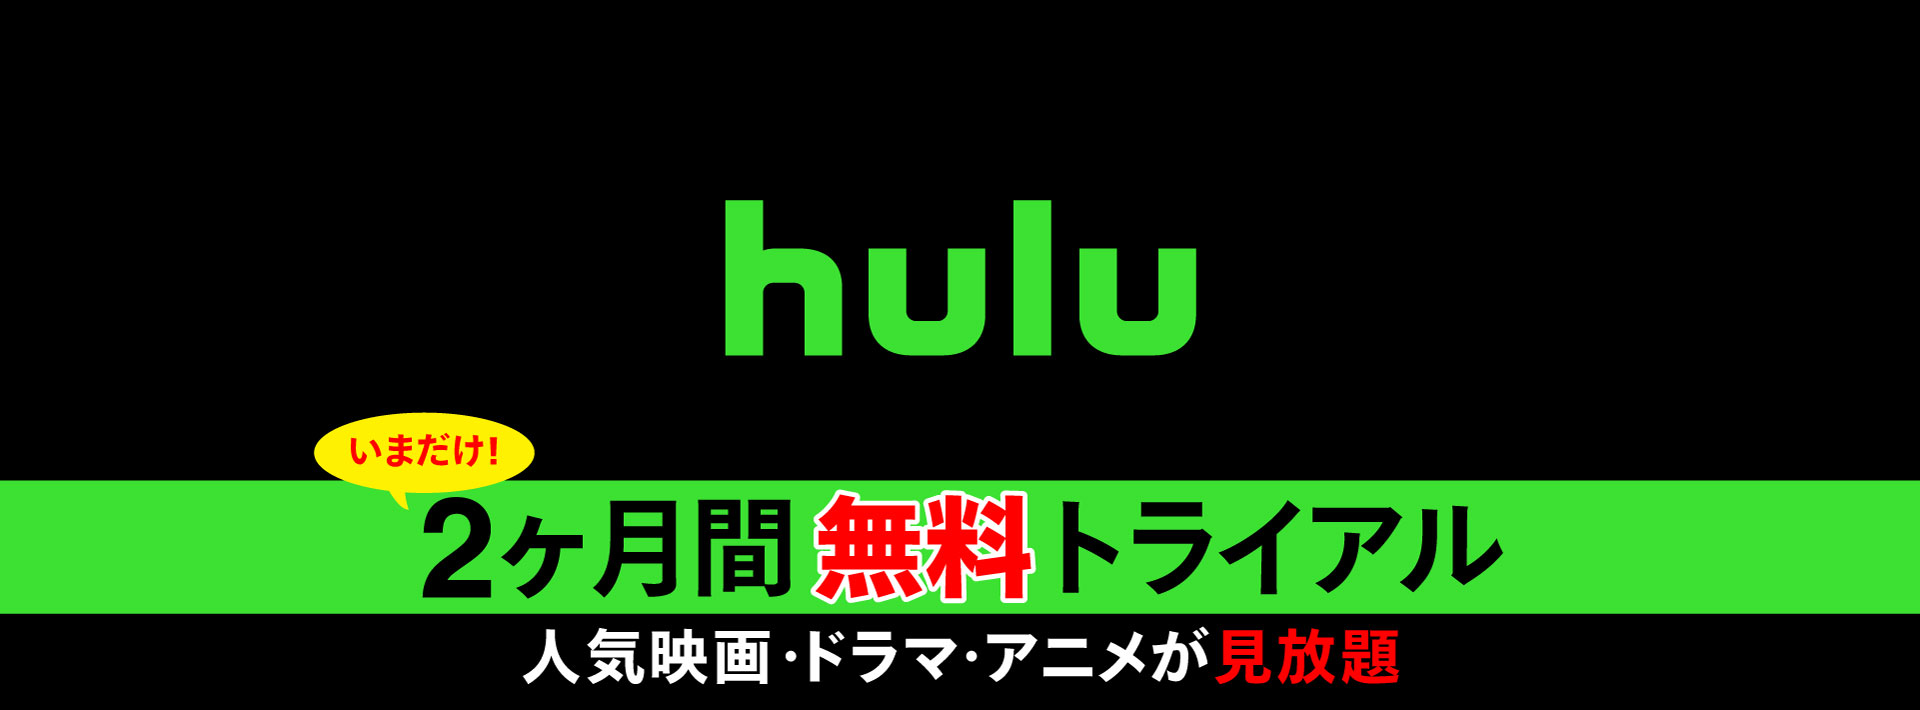 Hulu2ヶ月間無料トライアル